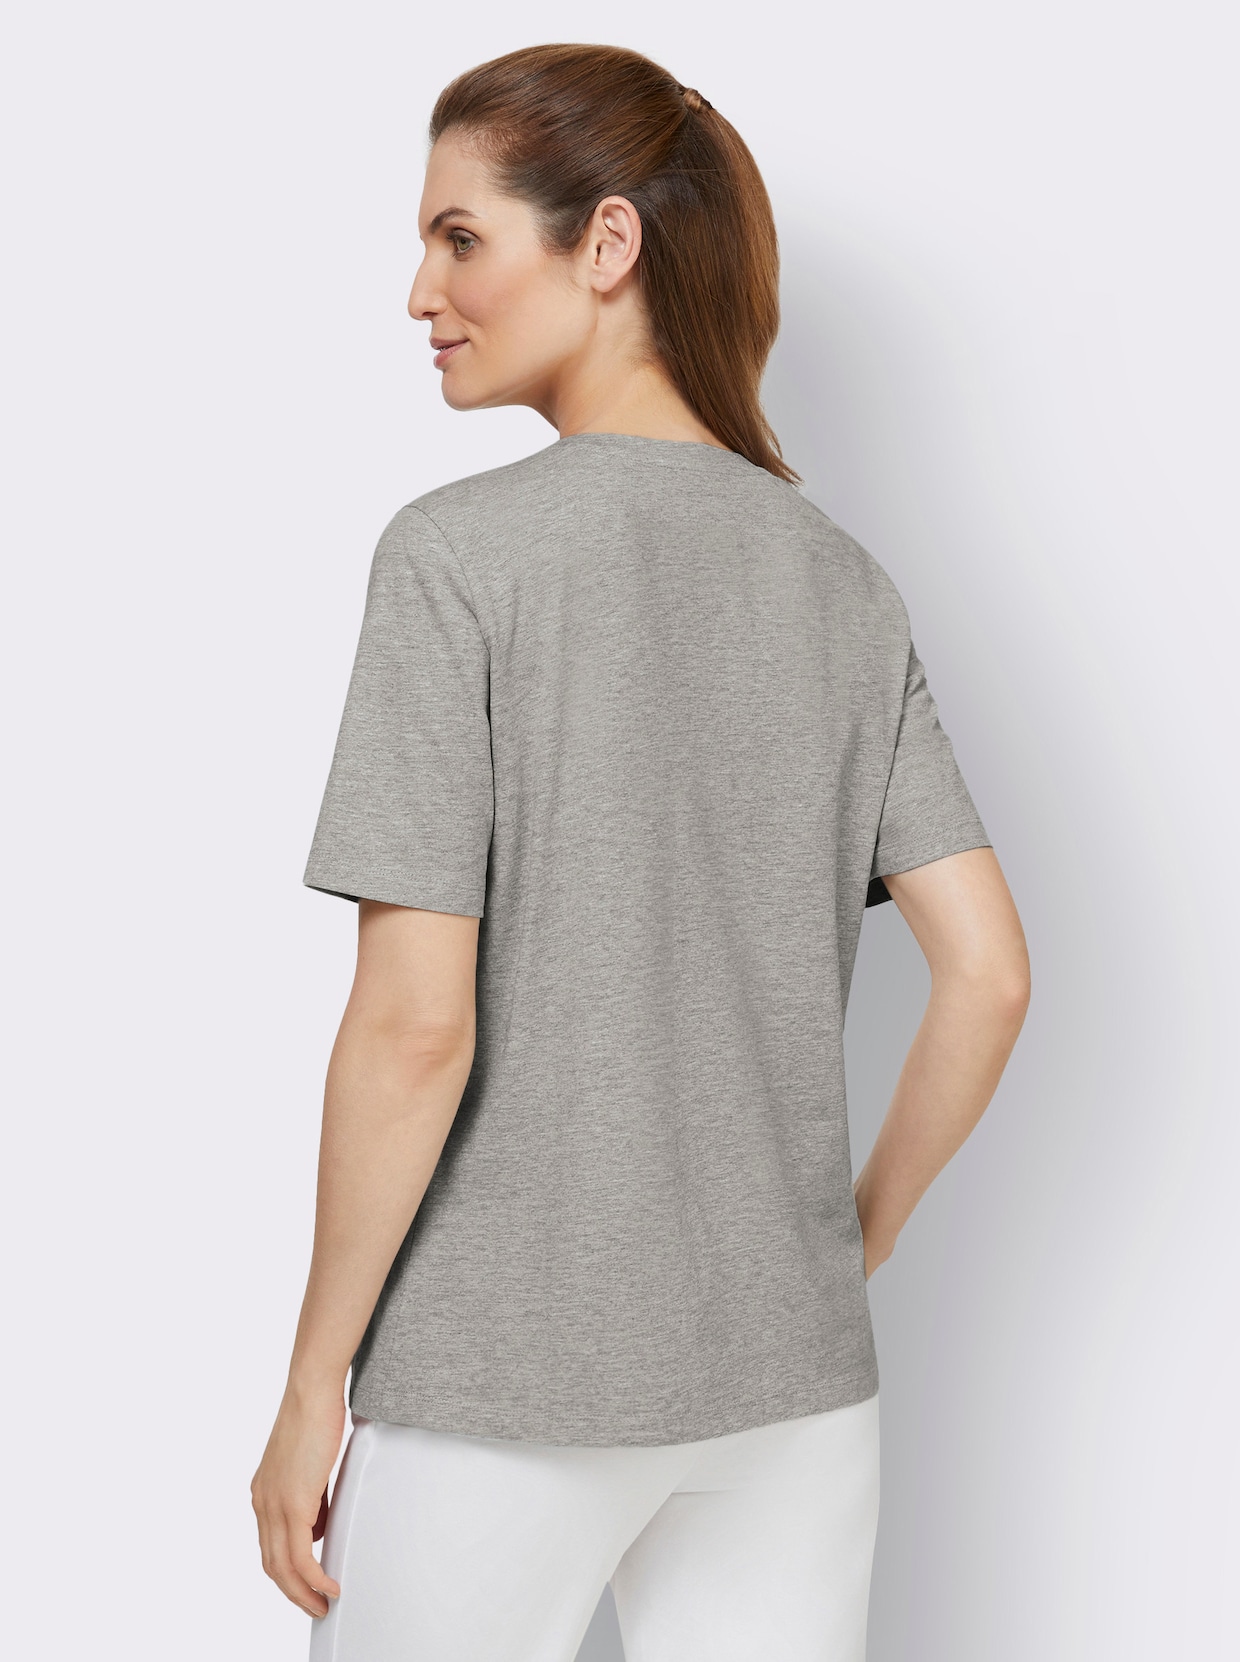 Shirts - graphit-meliert + grau-meliert